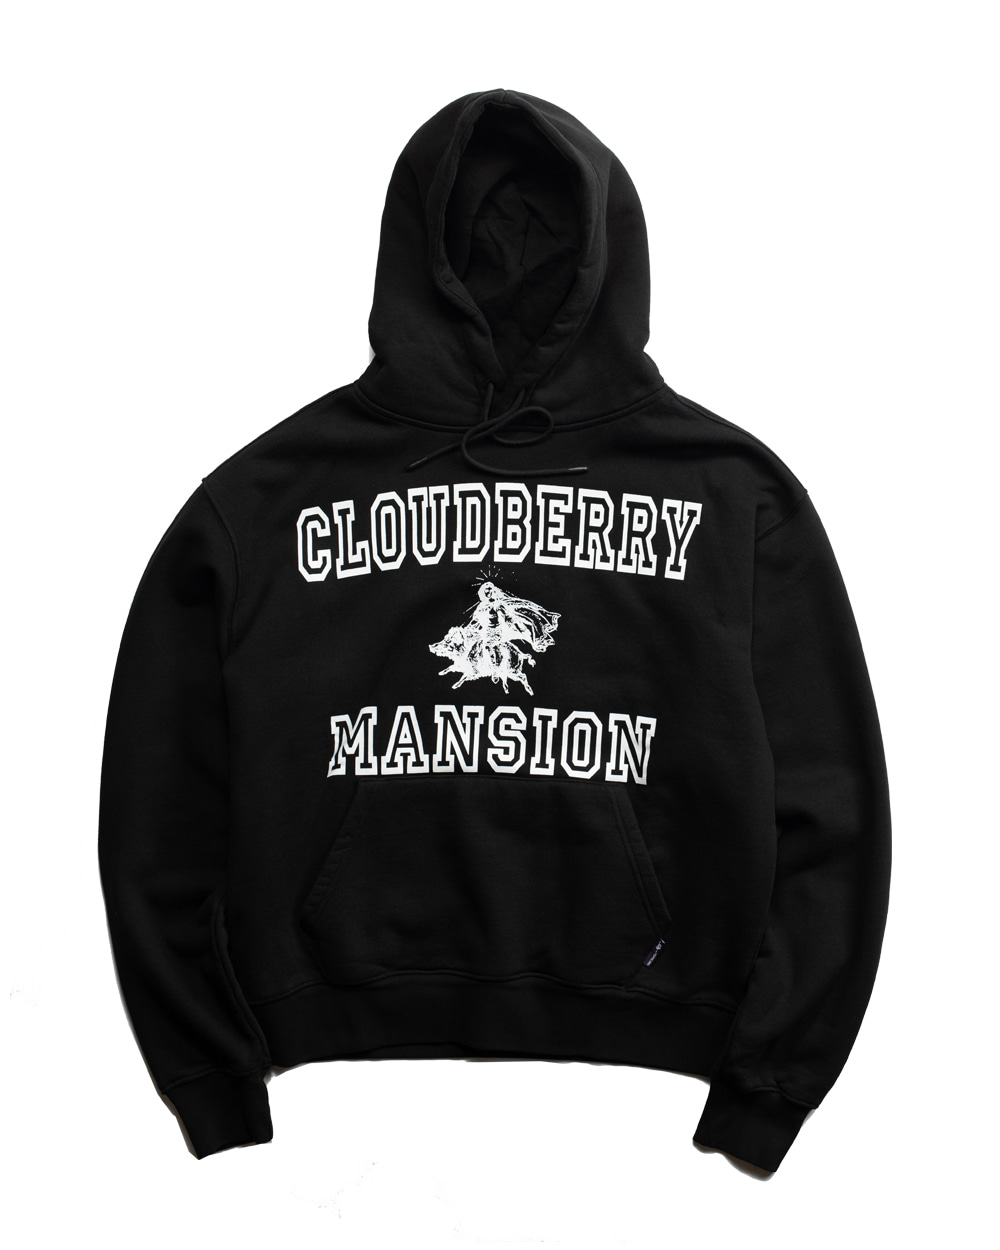 Cloudberry Mansion Hoodie (Black)